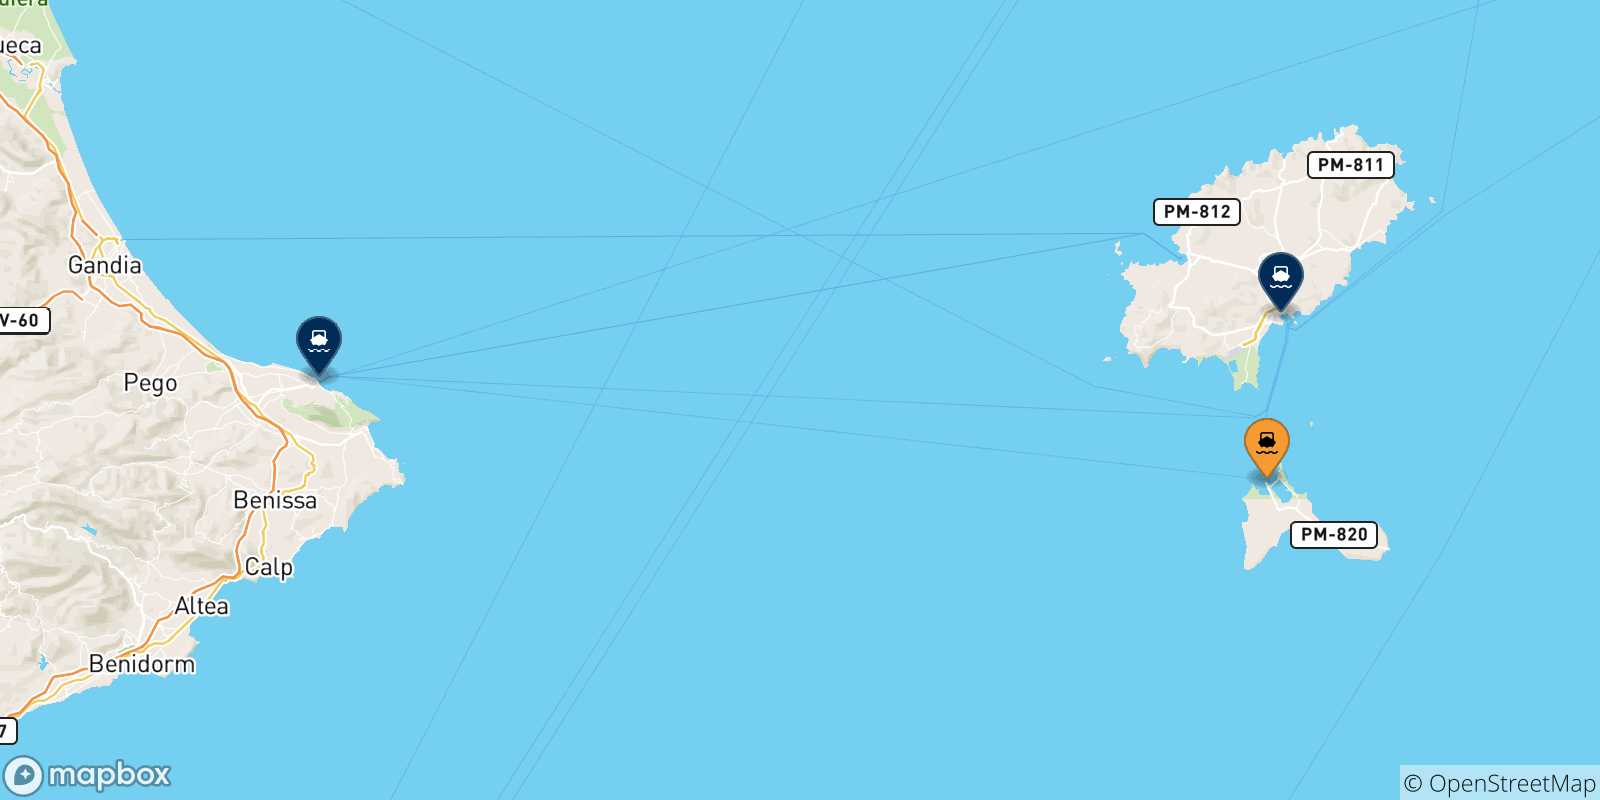 Mappa delle possibili rotte tra Formentera e la Spagna